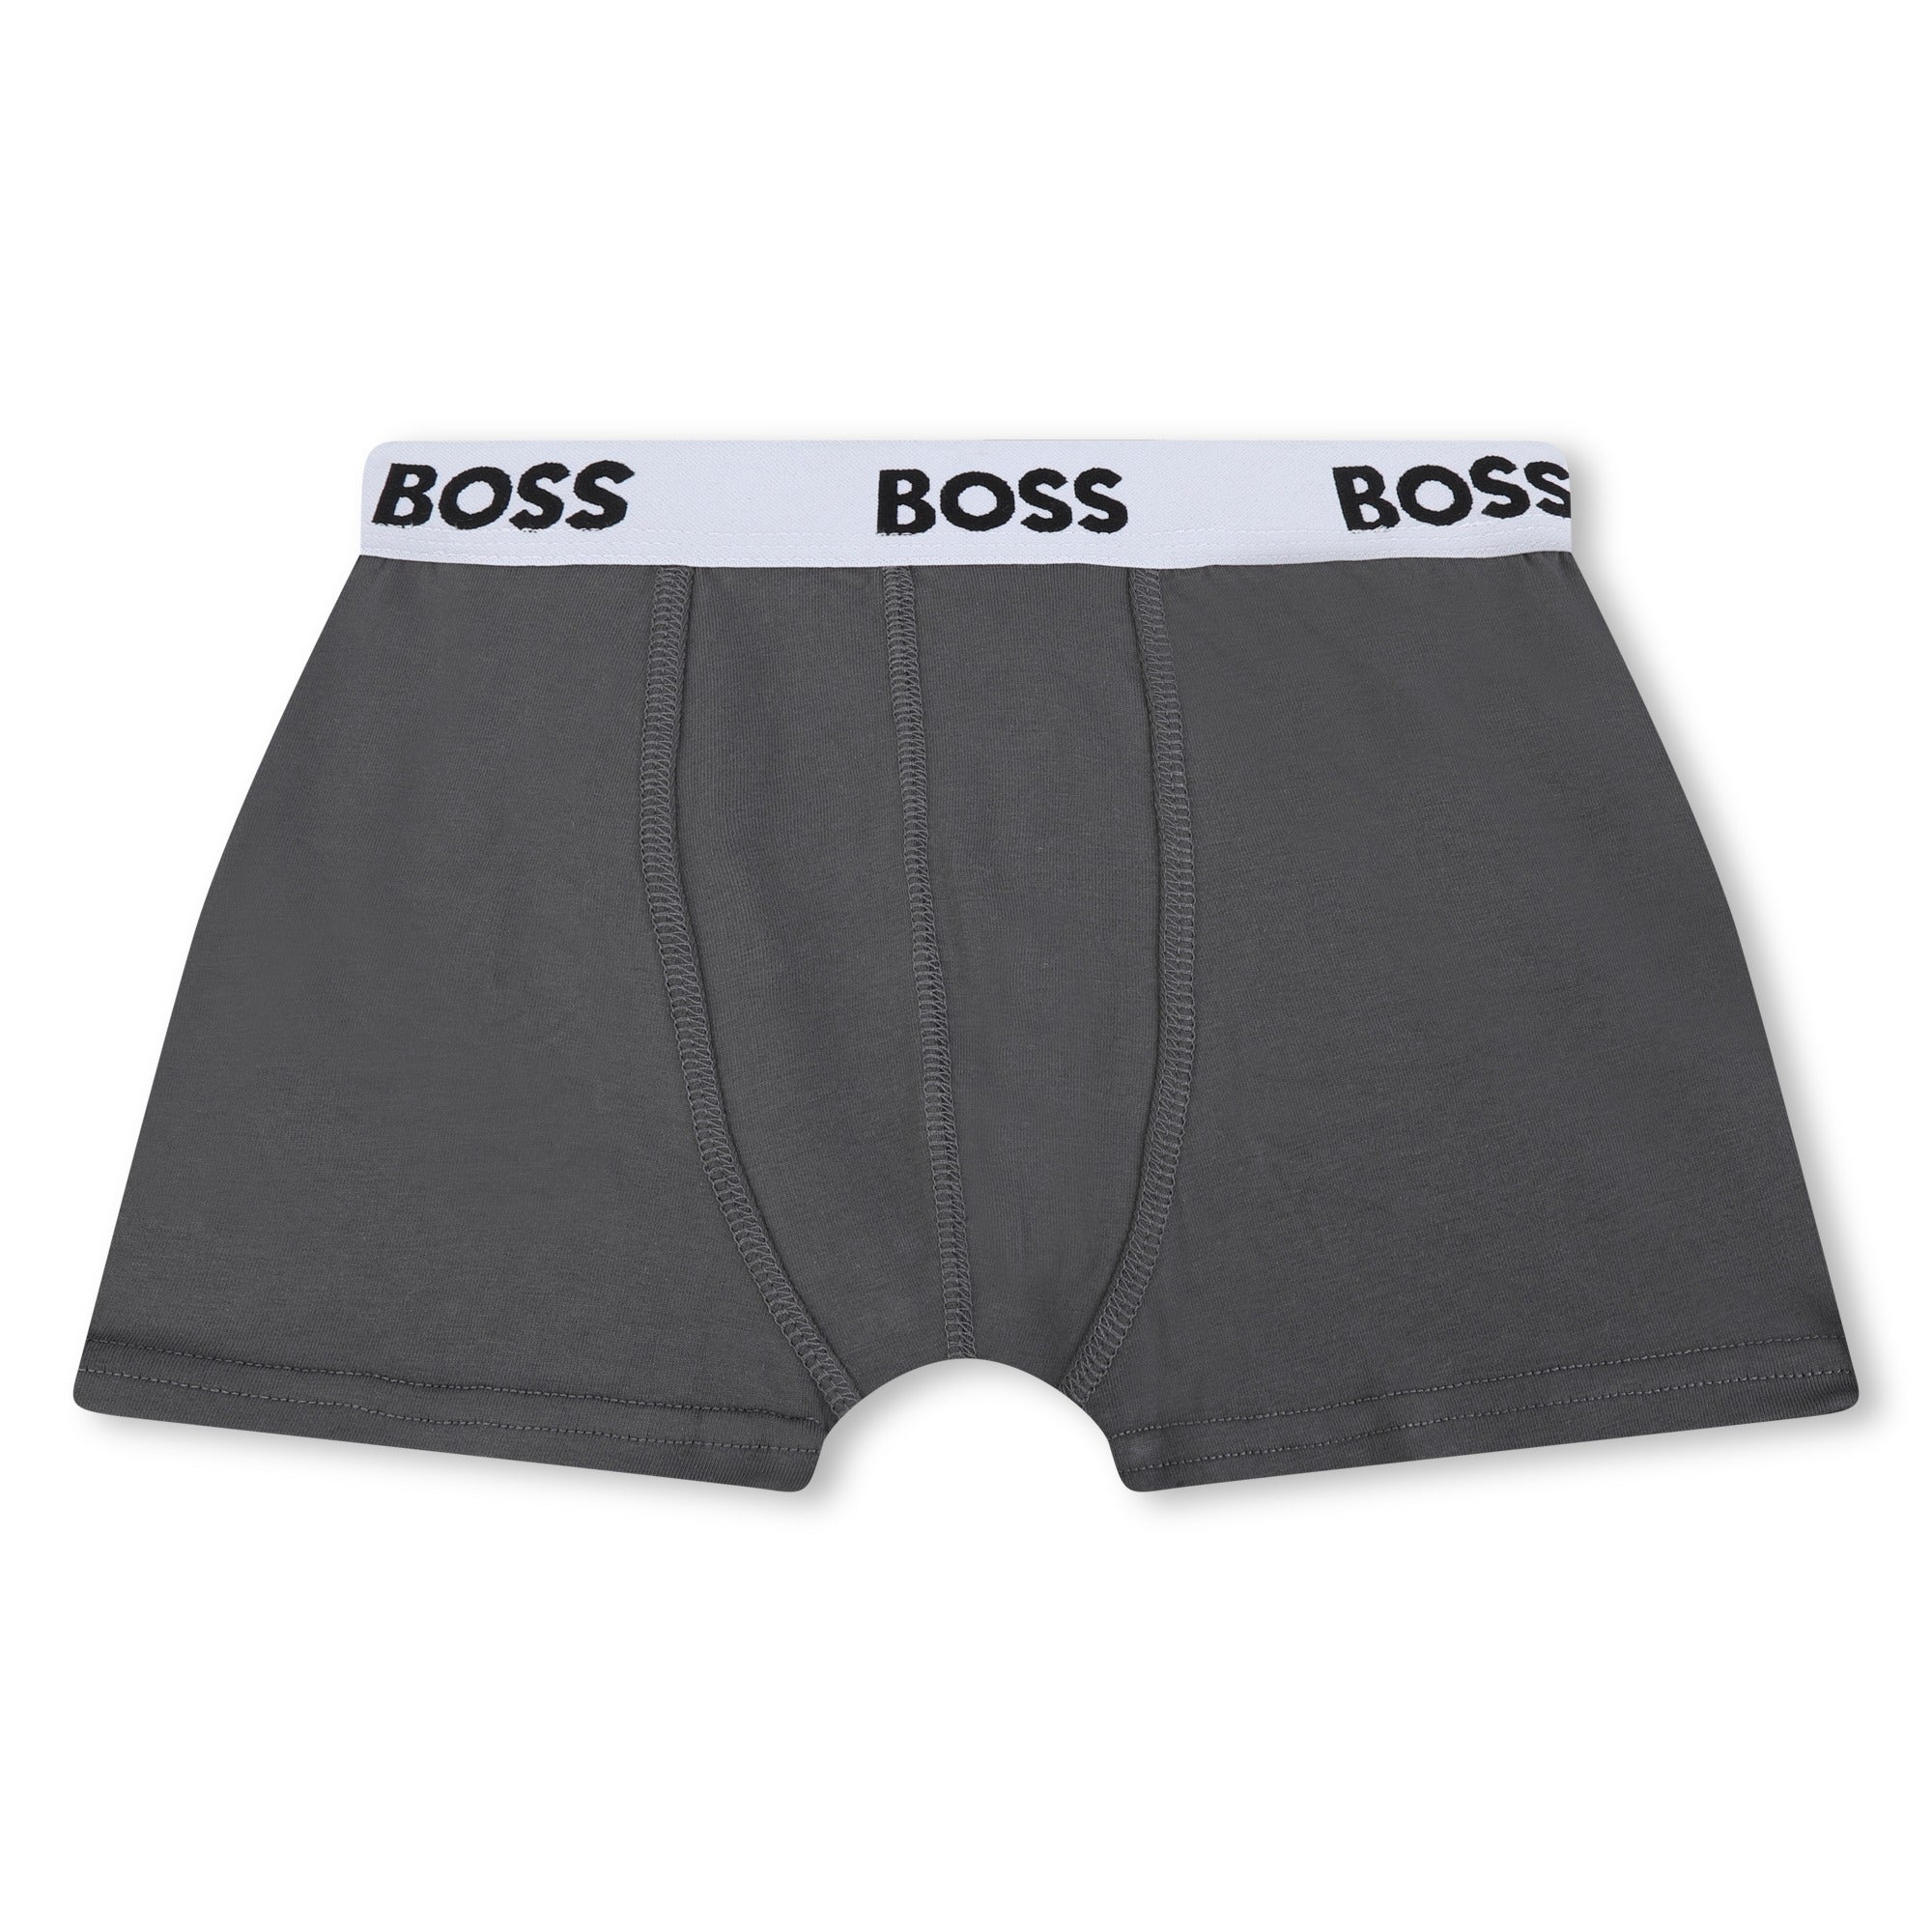 Boys Grey Cotton Underwear Set(2 Pack)